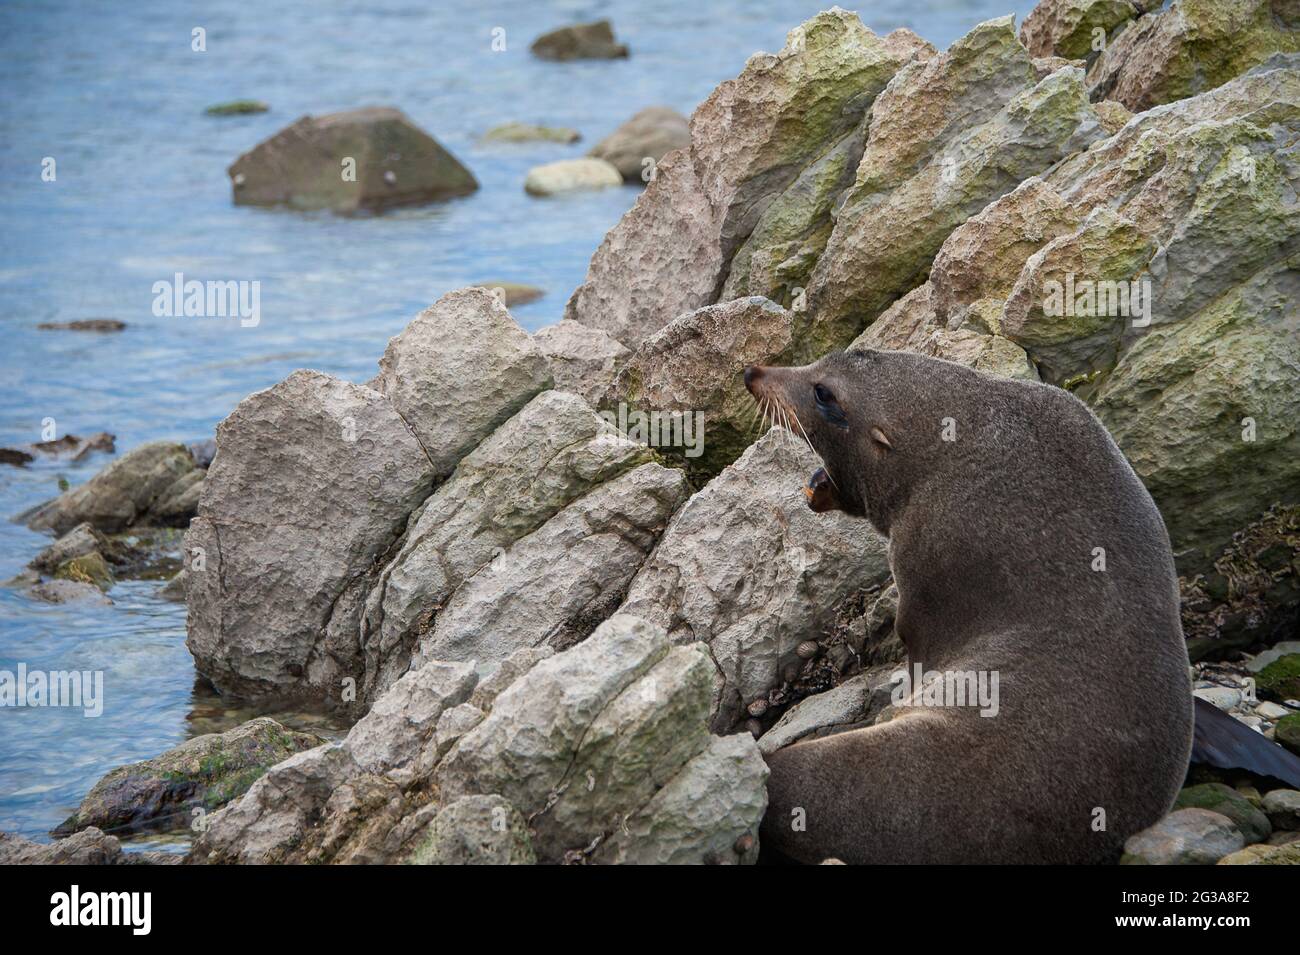 Australasian fur seal (Arctocephalus forsteri)  sunning on rocks, Kaikoura, New Zealand Stock Photo